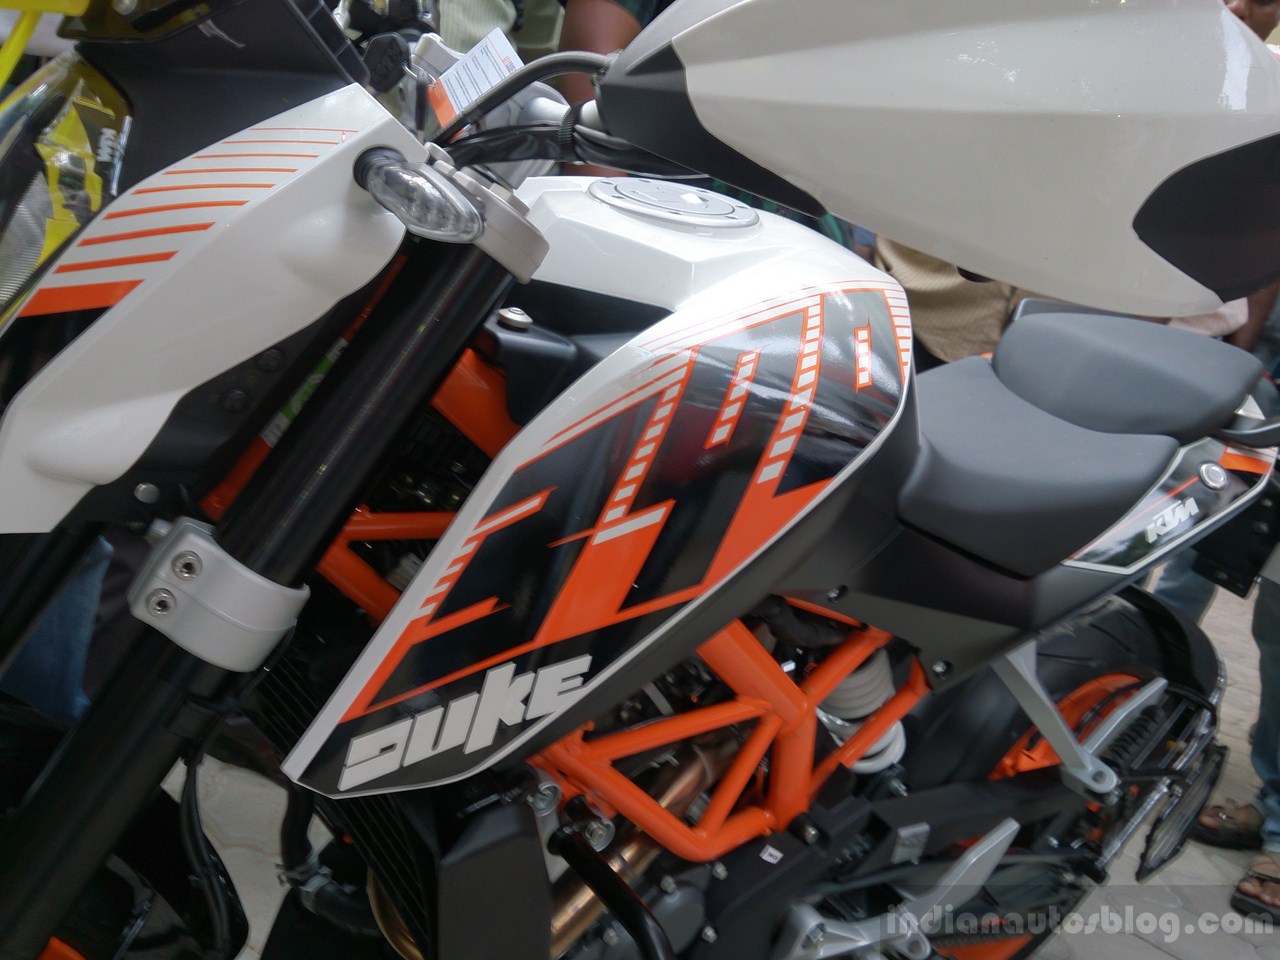 KTM Duke 390 Chennai launch